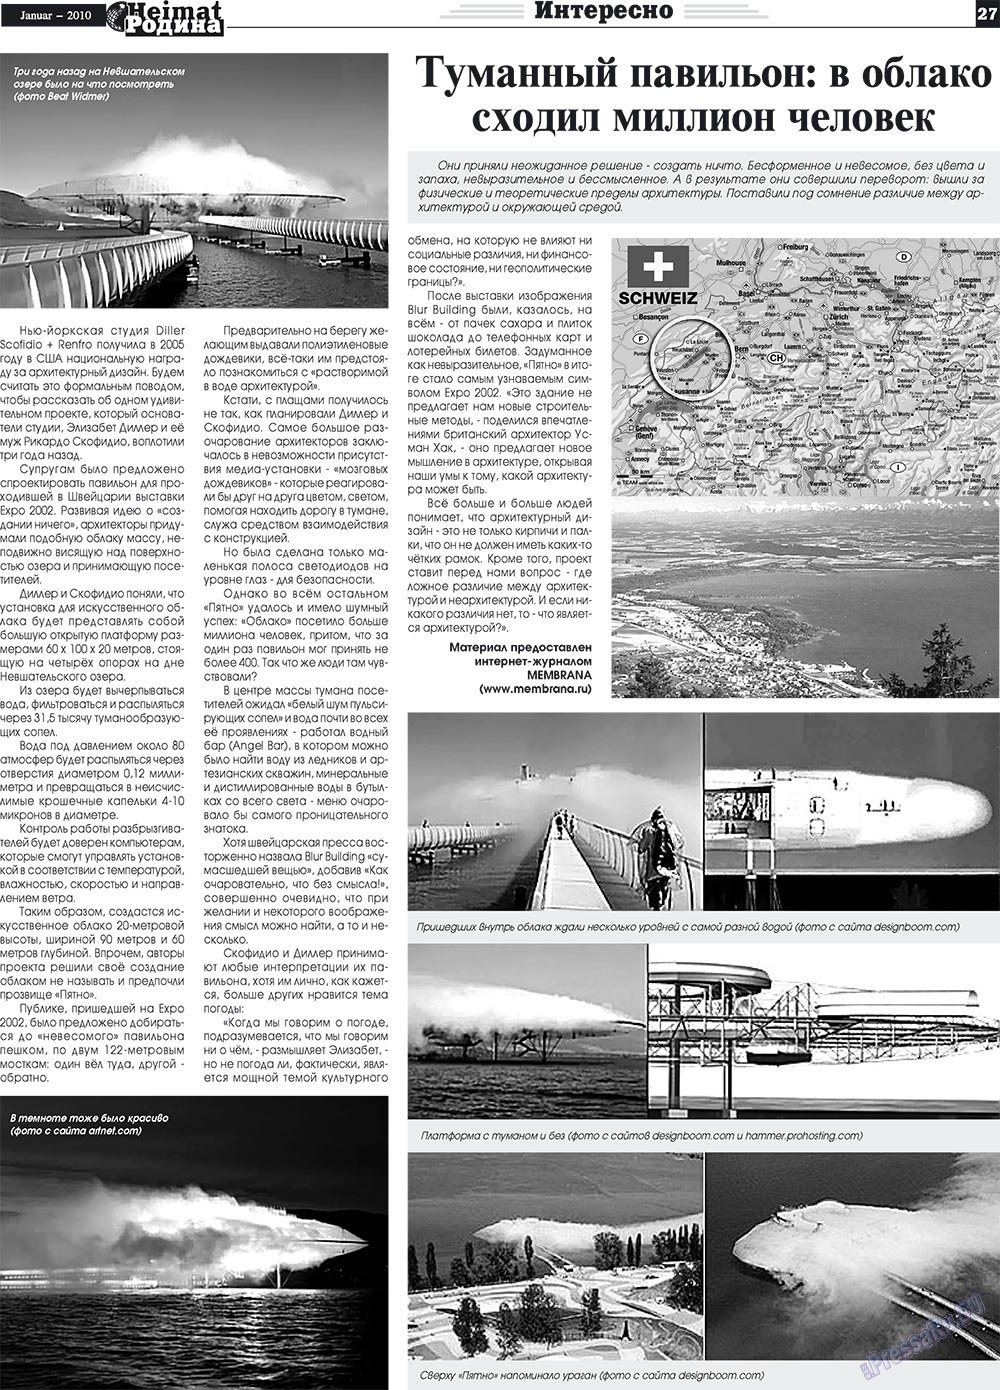 Heimat-Родина (газета). 2010 год, номер 1, стр. 27